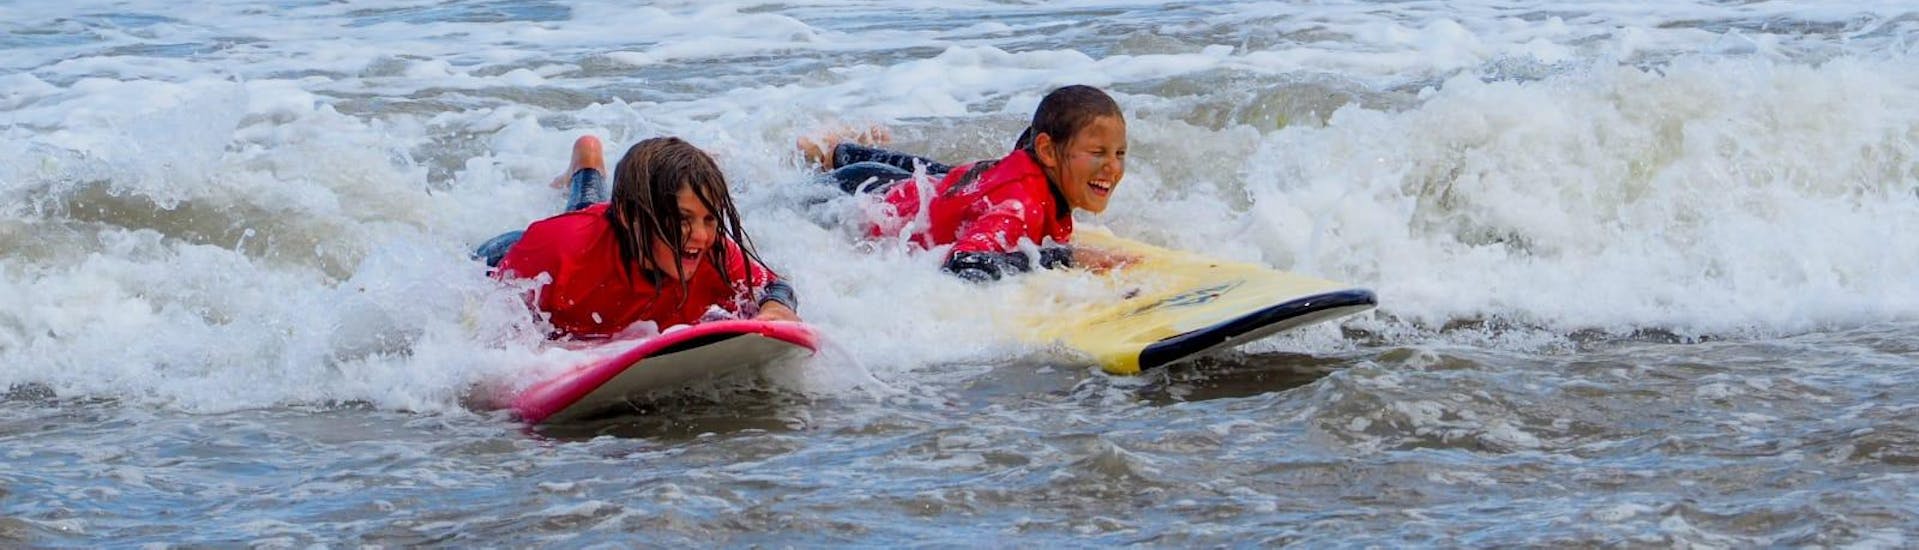 Zwei Kinder haben sichtlich Spaß im Wasser während ihrem Privater Surfkurs am Playa de Sabón für alle Levels, organisiert von Prado Surf.